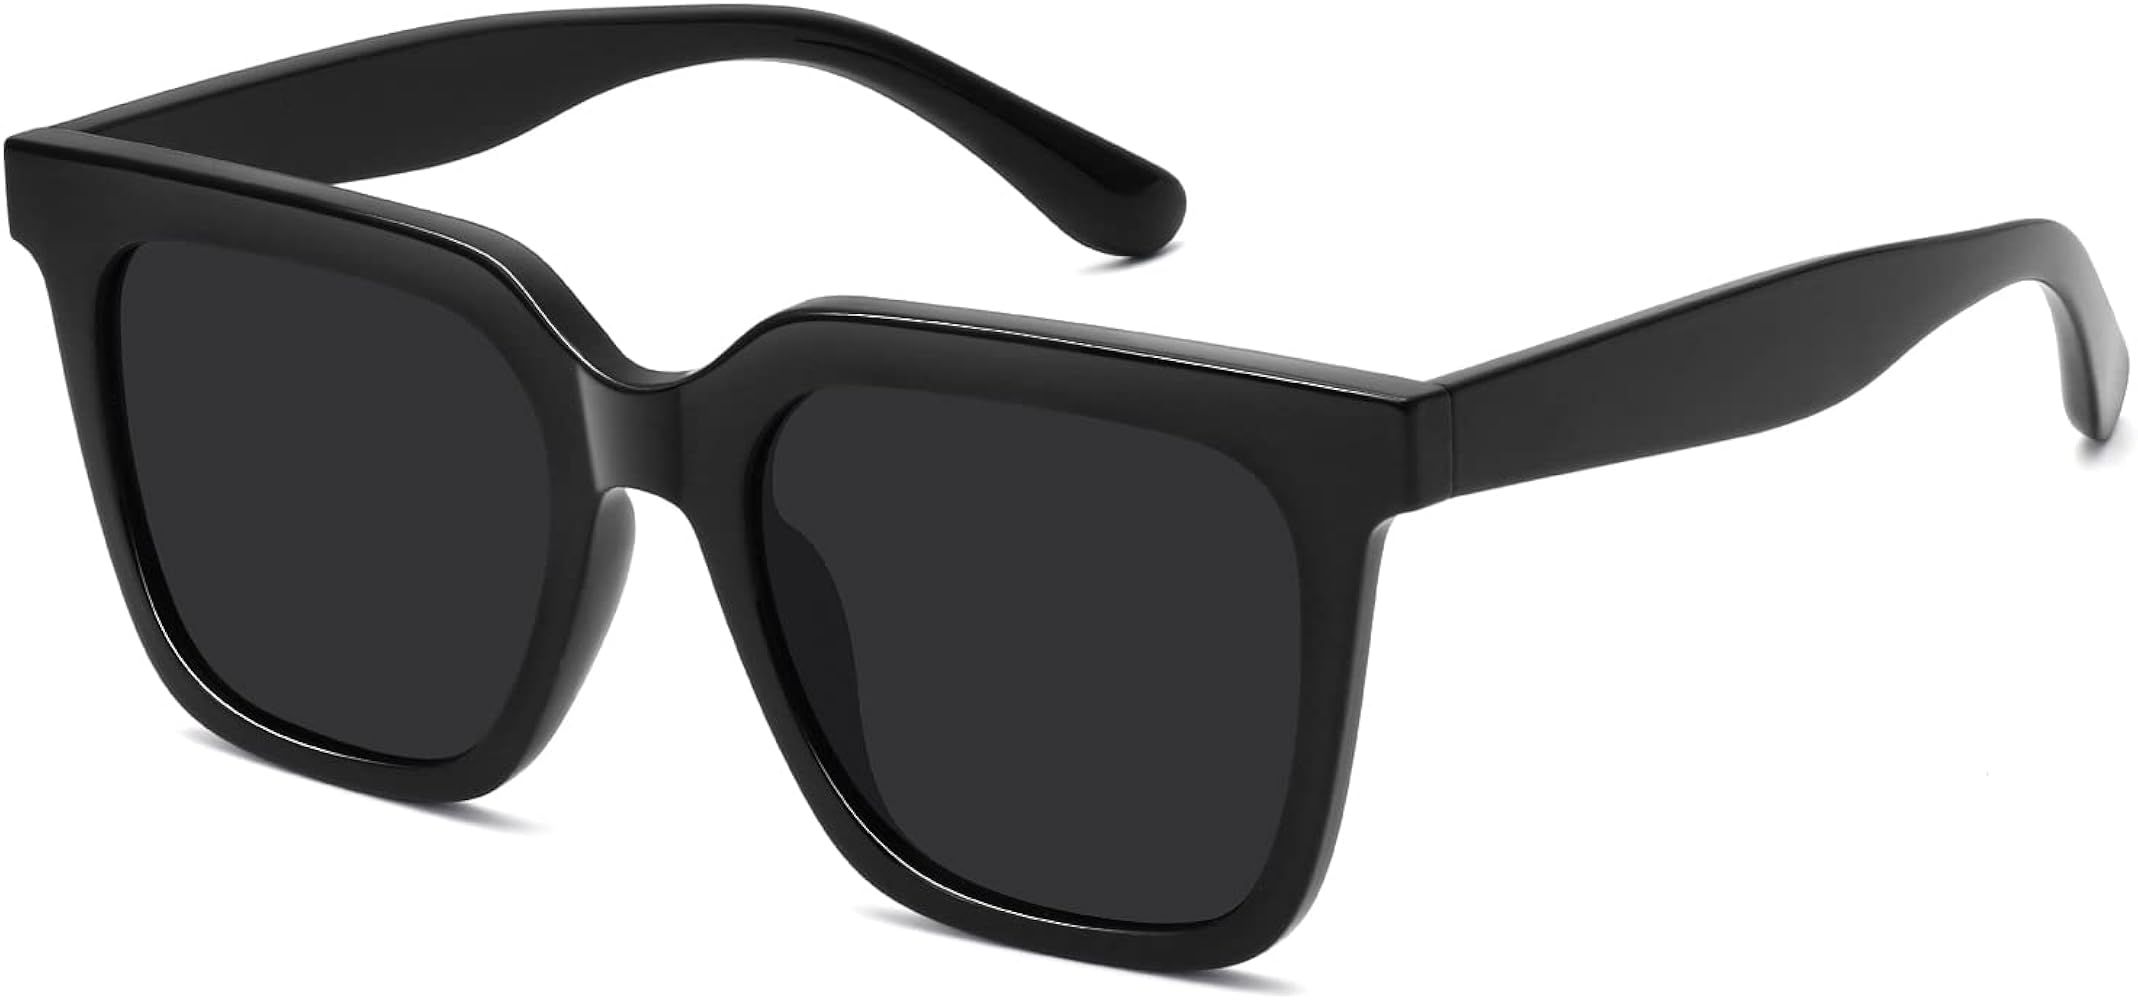 Large Square Sunglasses Trendy Polarized Sunglasses for Women Men Classic Retro Style UV400 Prote... | Amazon (US)